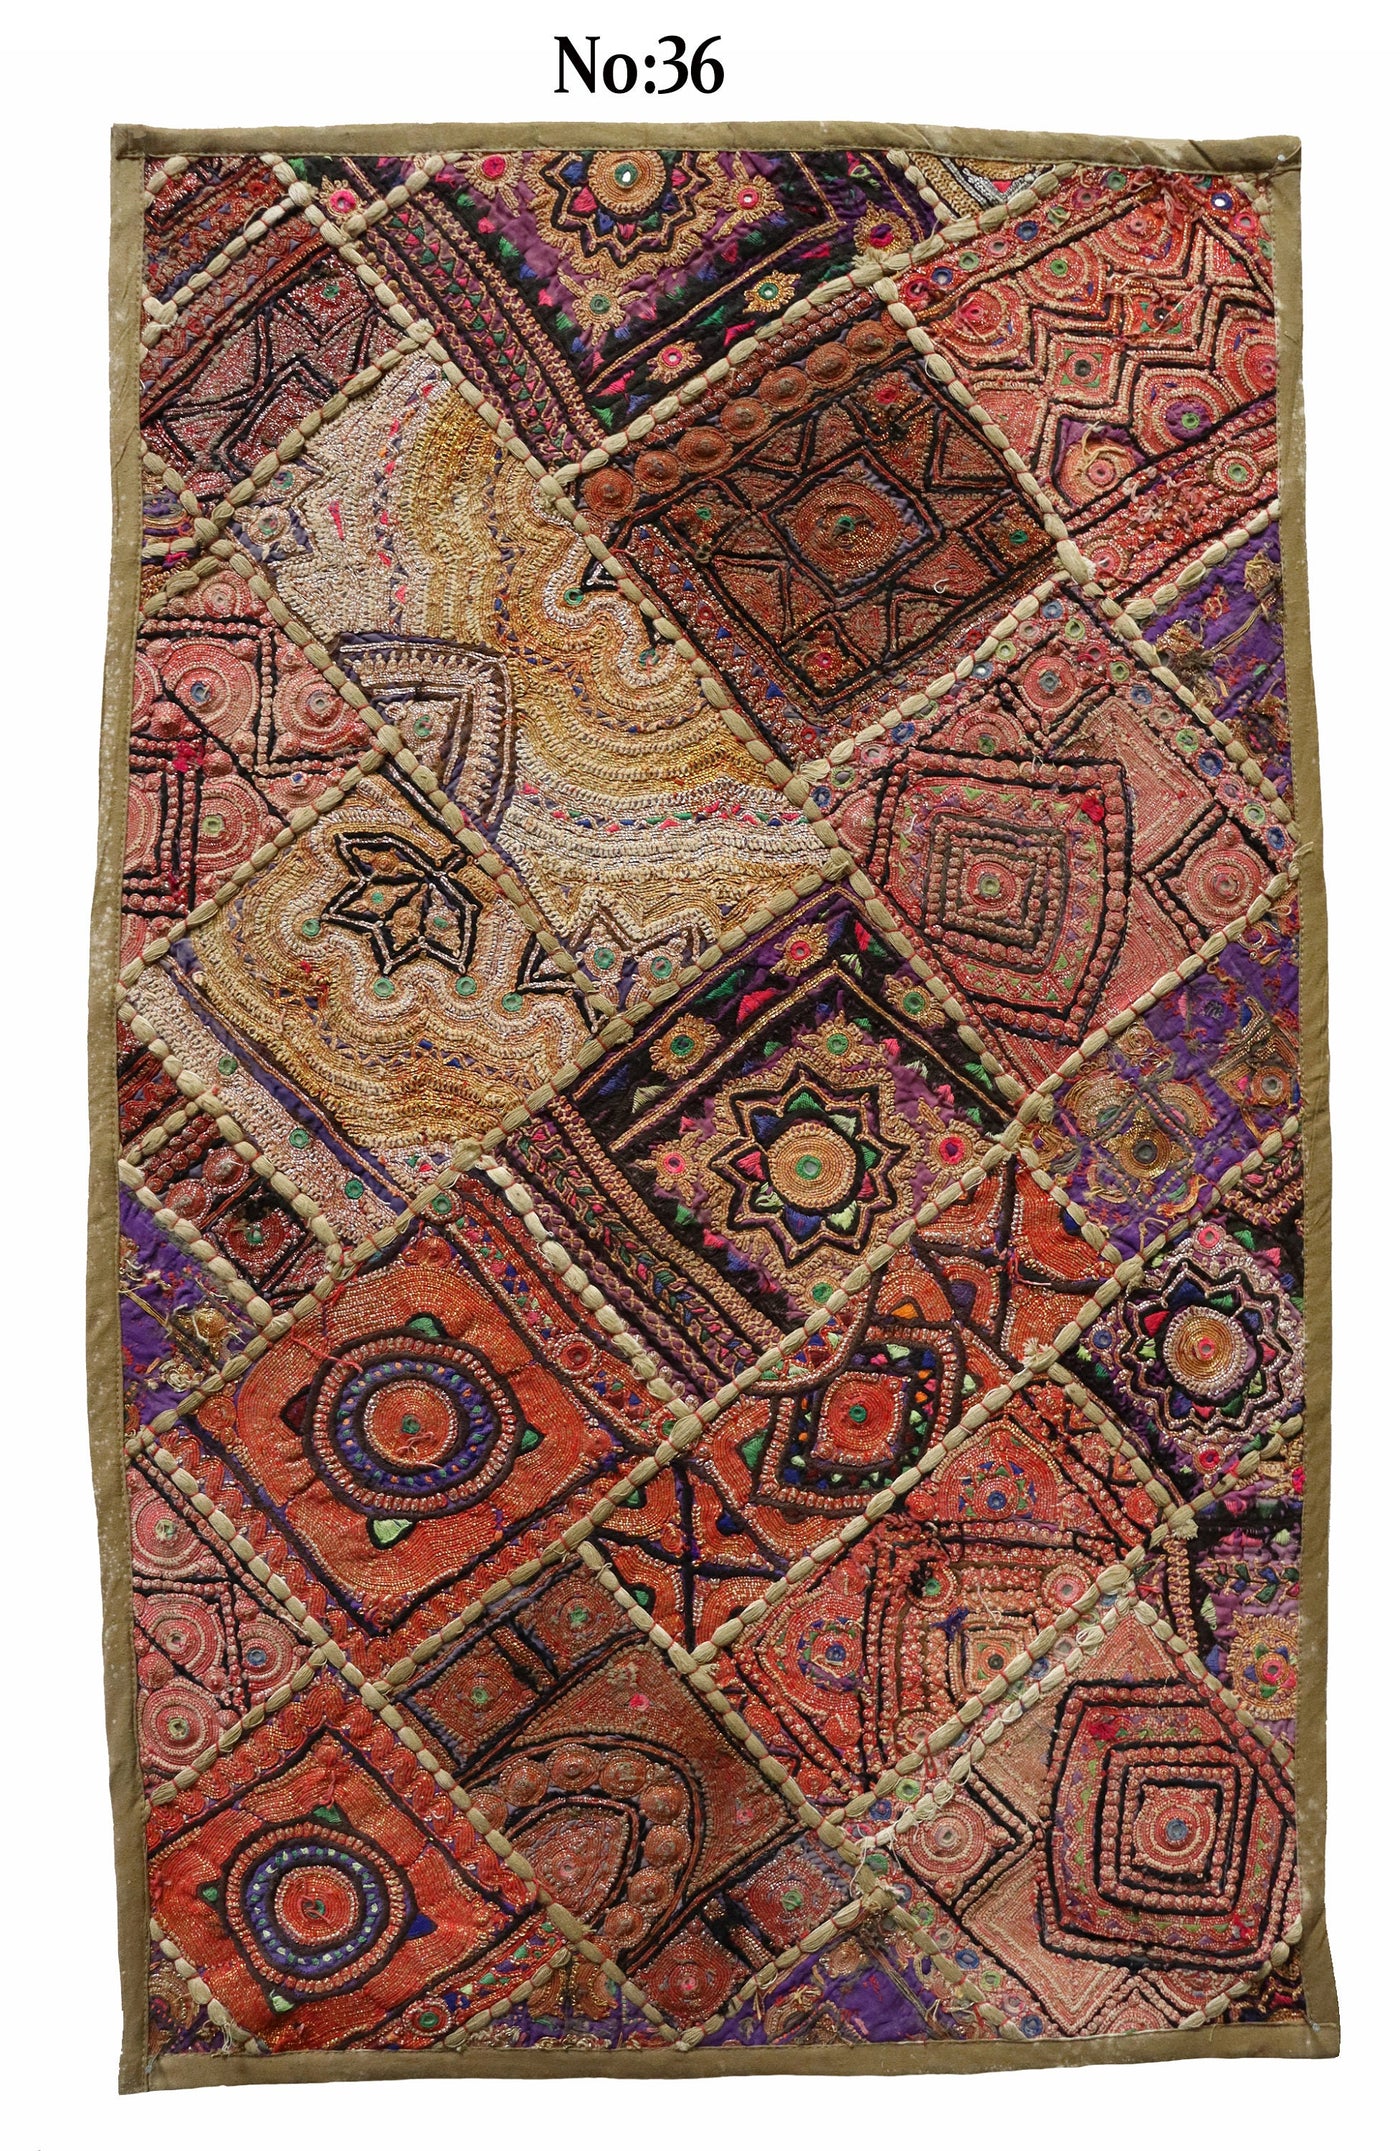 87x53 cm Vintage Bohemian orientalische handgefertigte Patchwork Wandbehang Wandteppich Teppich  Nr:GD33/47 Wandbehang Orientsbazar   